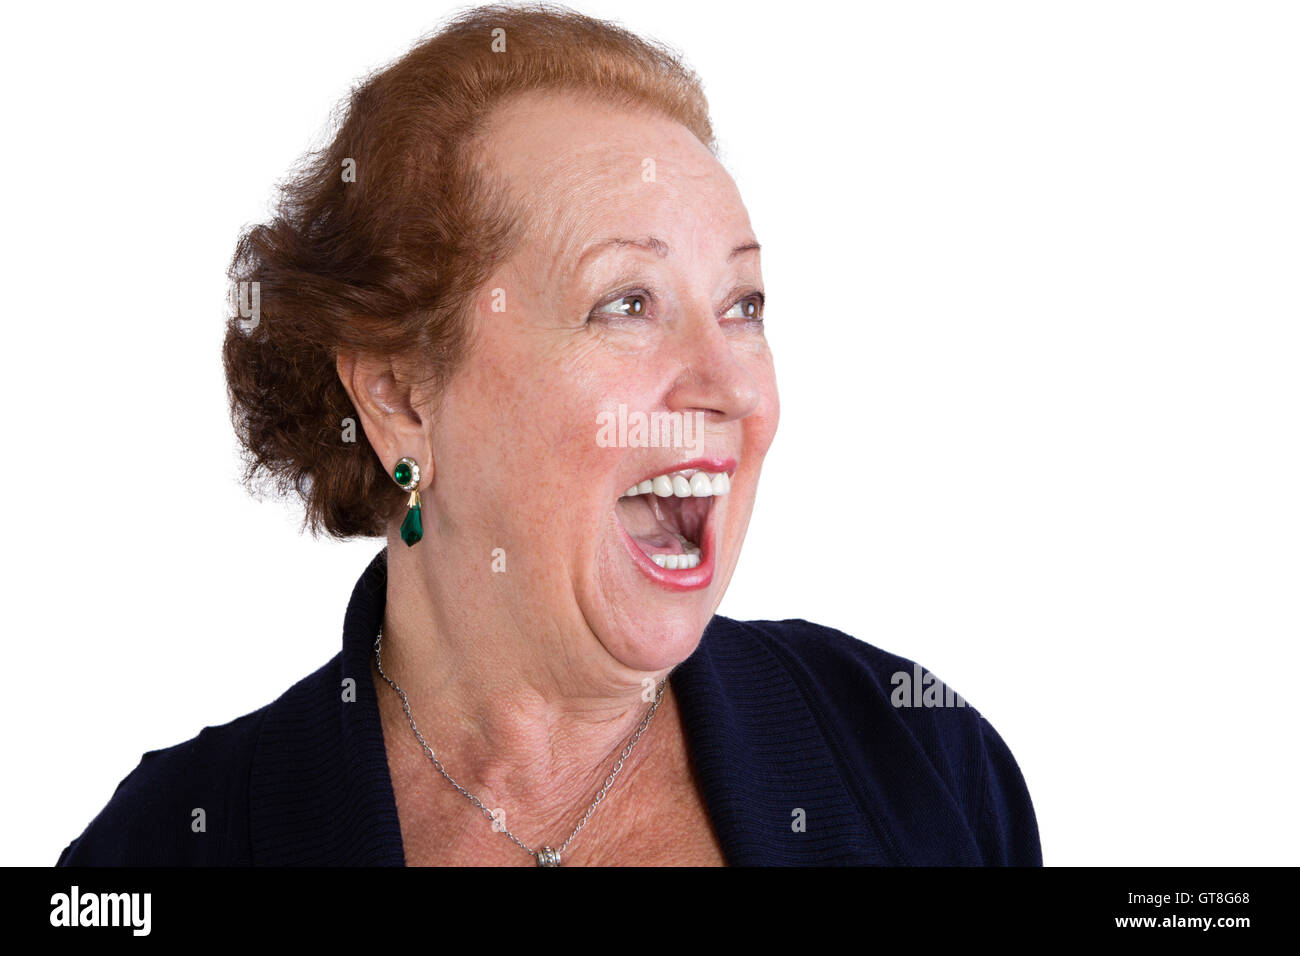 Nahaufnahme Senior Woman zeigt ein überrascht Gesichtsausdruck mit offenen Mund und auf der Suche auf der rechten Seite des Rahmens, isoliert auf W Stockfoto